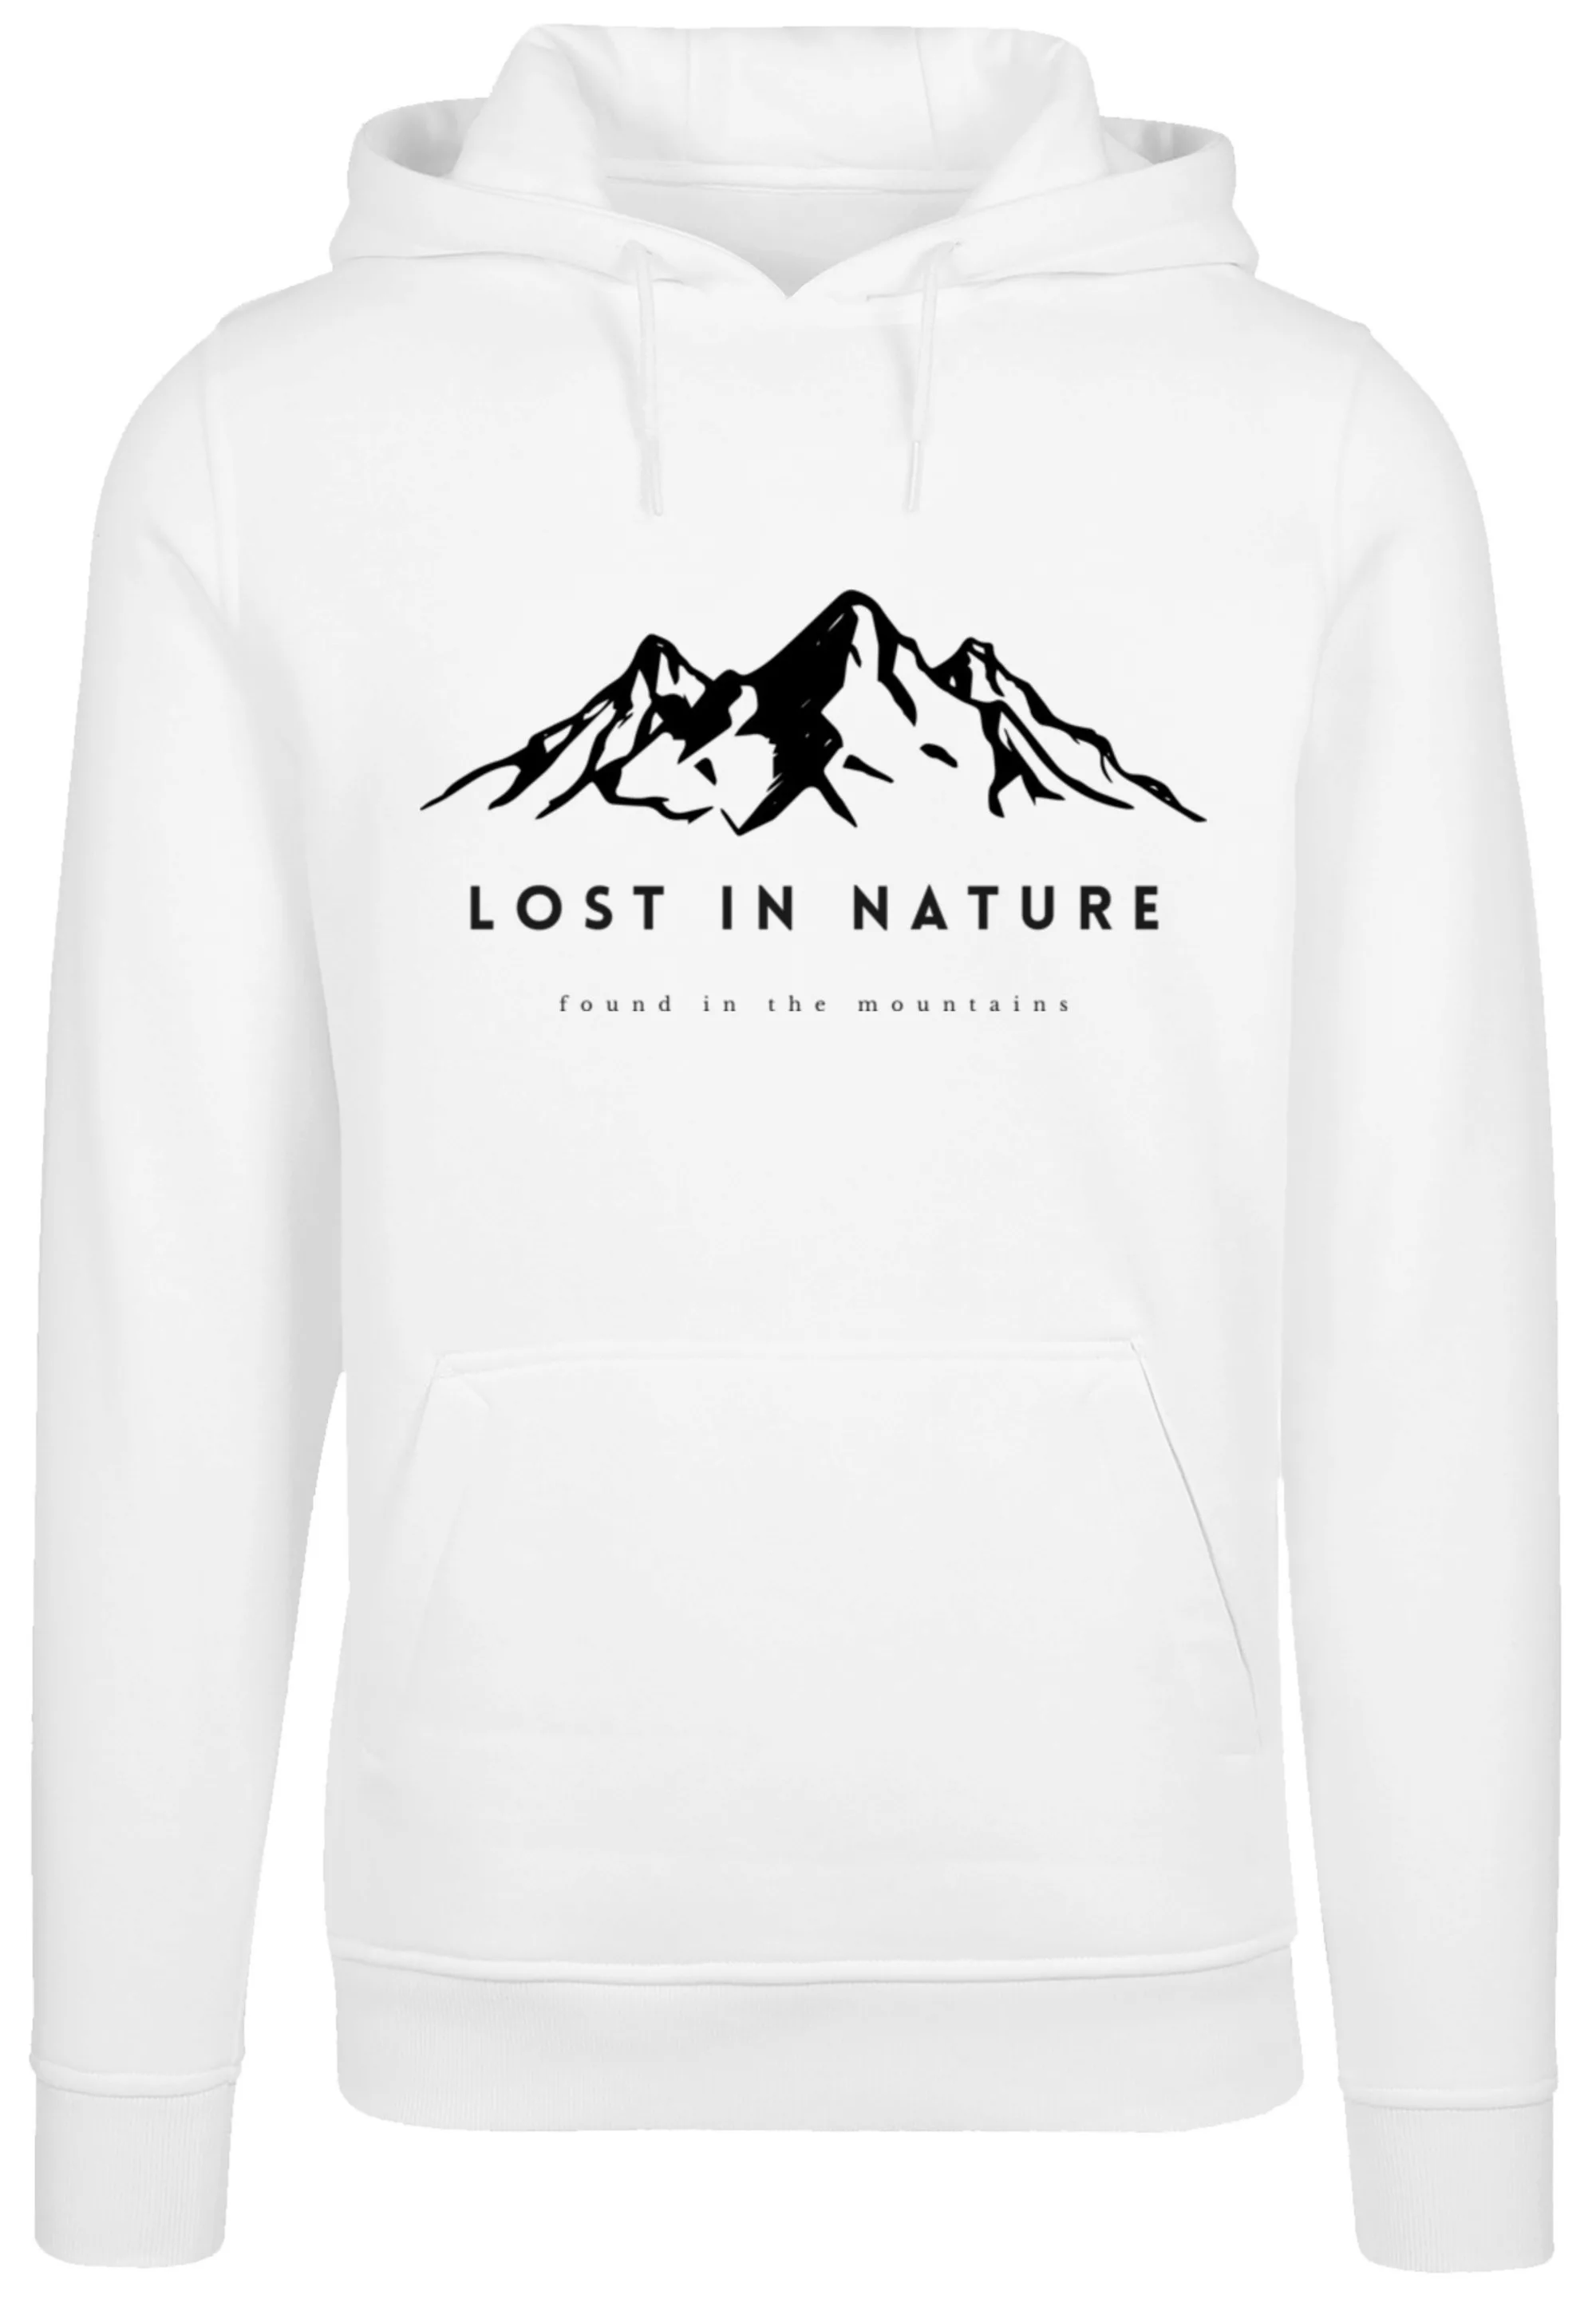 F4NT4STIC Kapuzenpullover "Lost in nature", Hoodie, Warm, Bequem günstig online kaufen